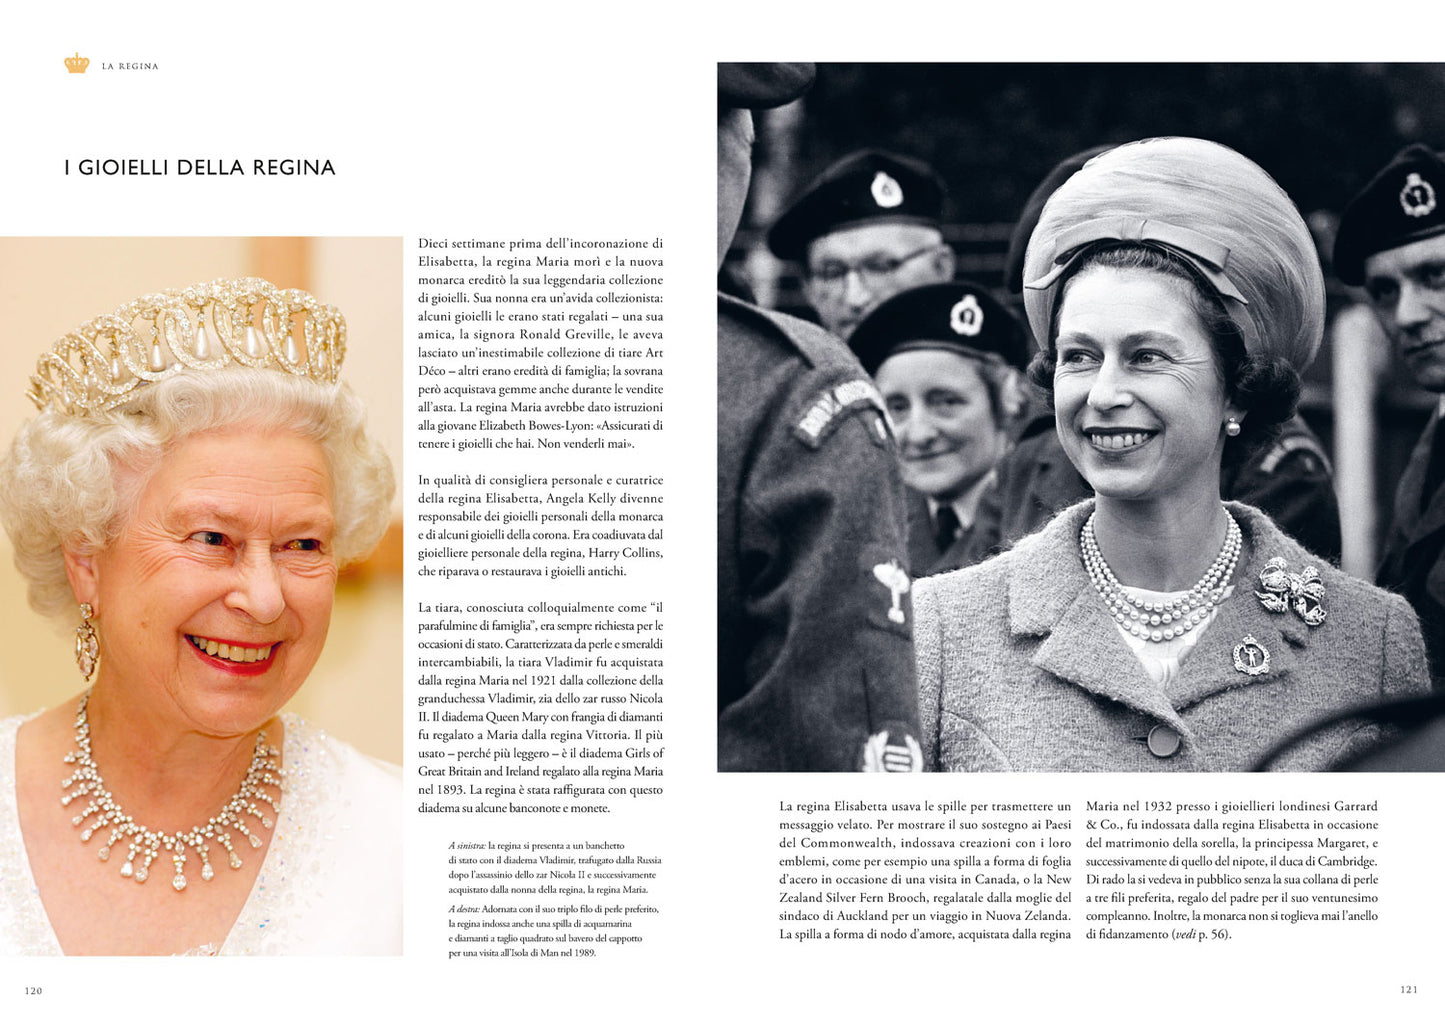 Elisabetta II. La più grande regina. Storie, immagini e ricordi da conservare